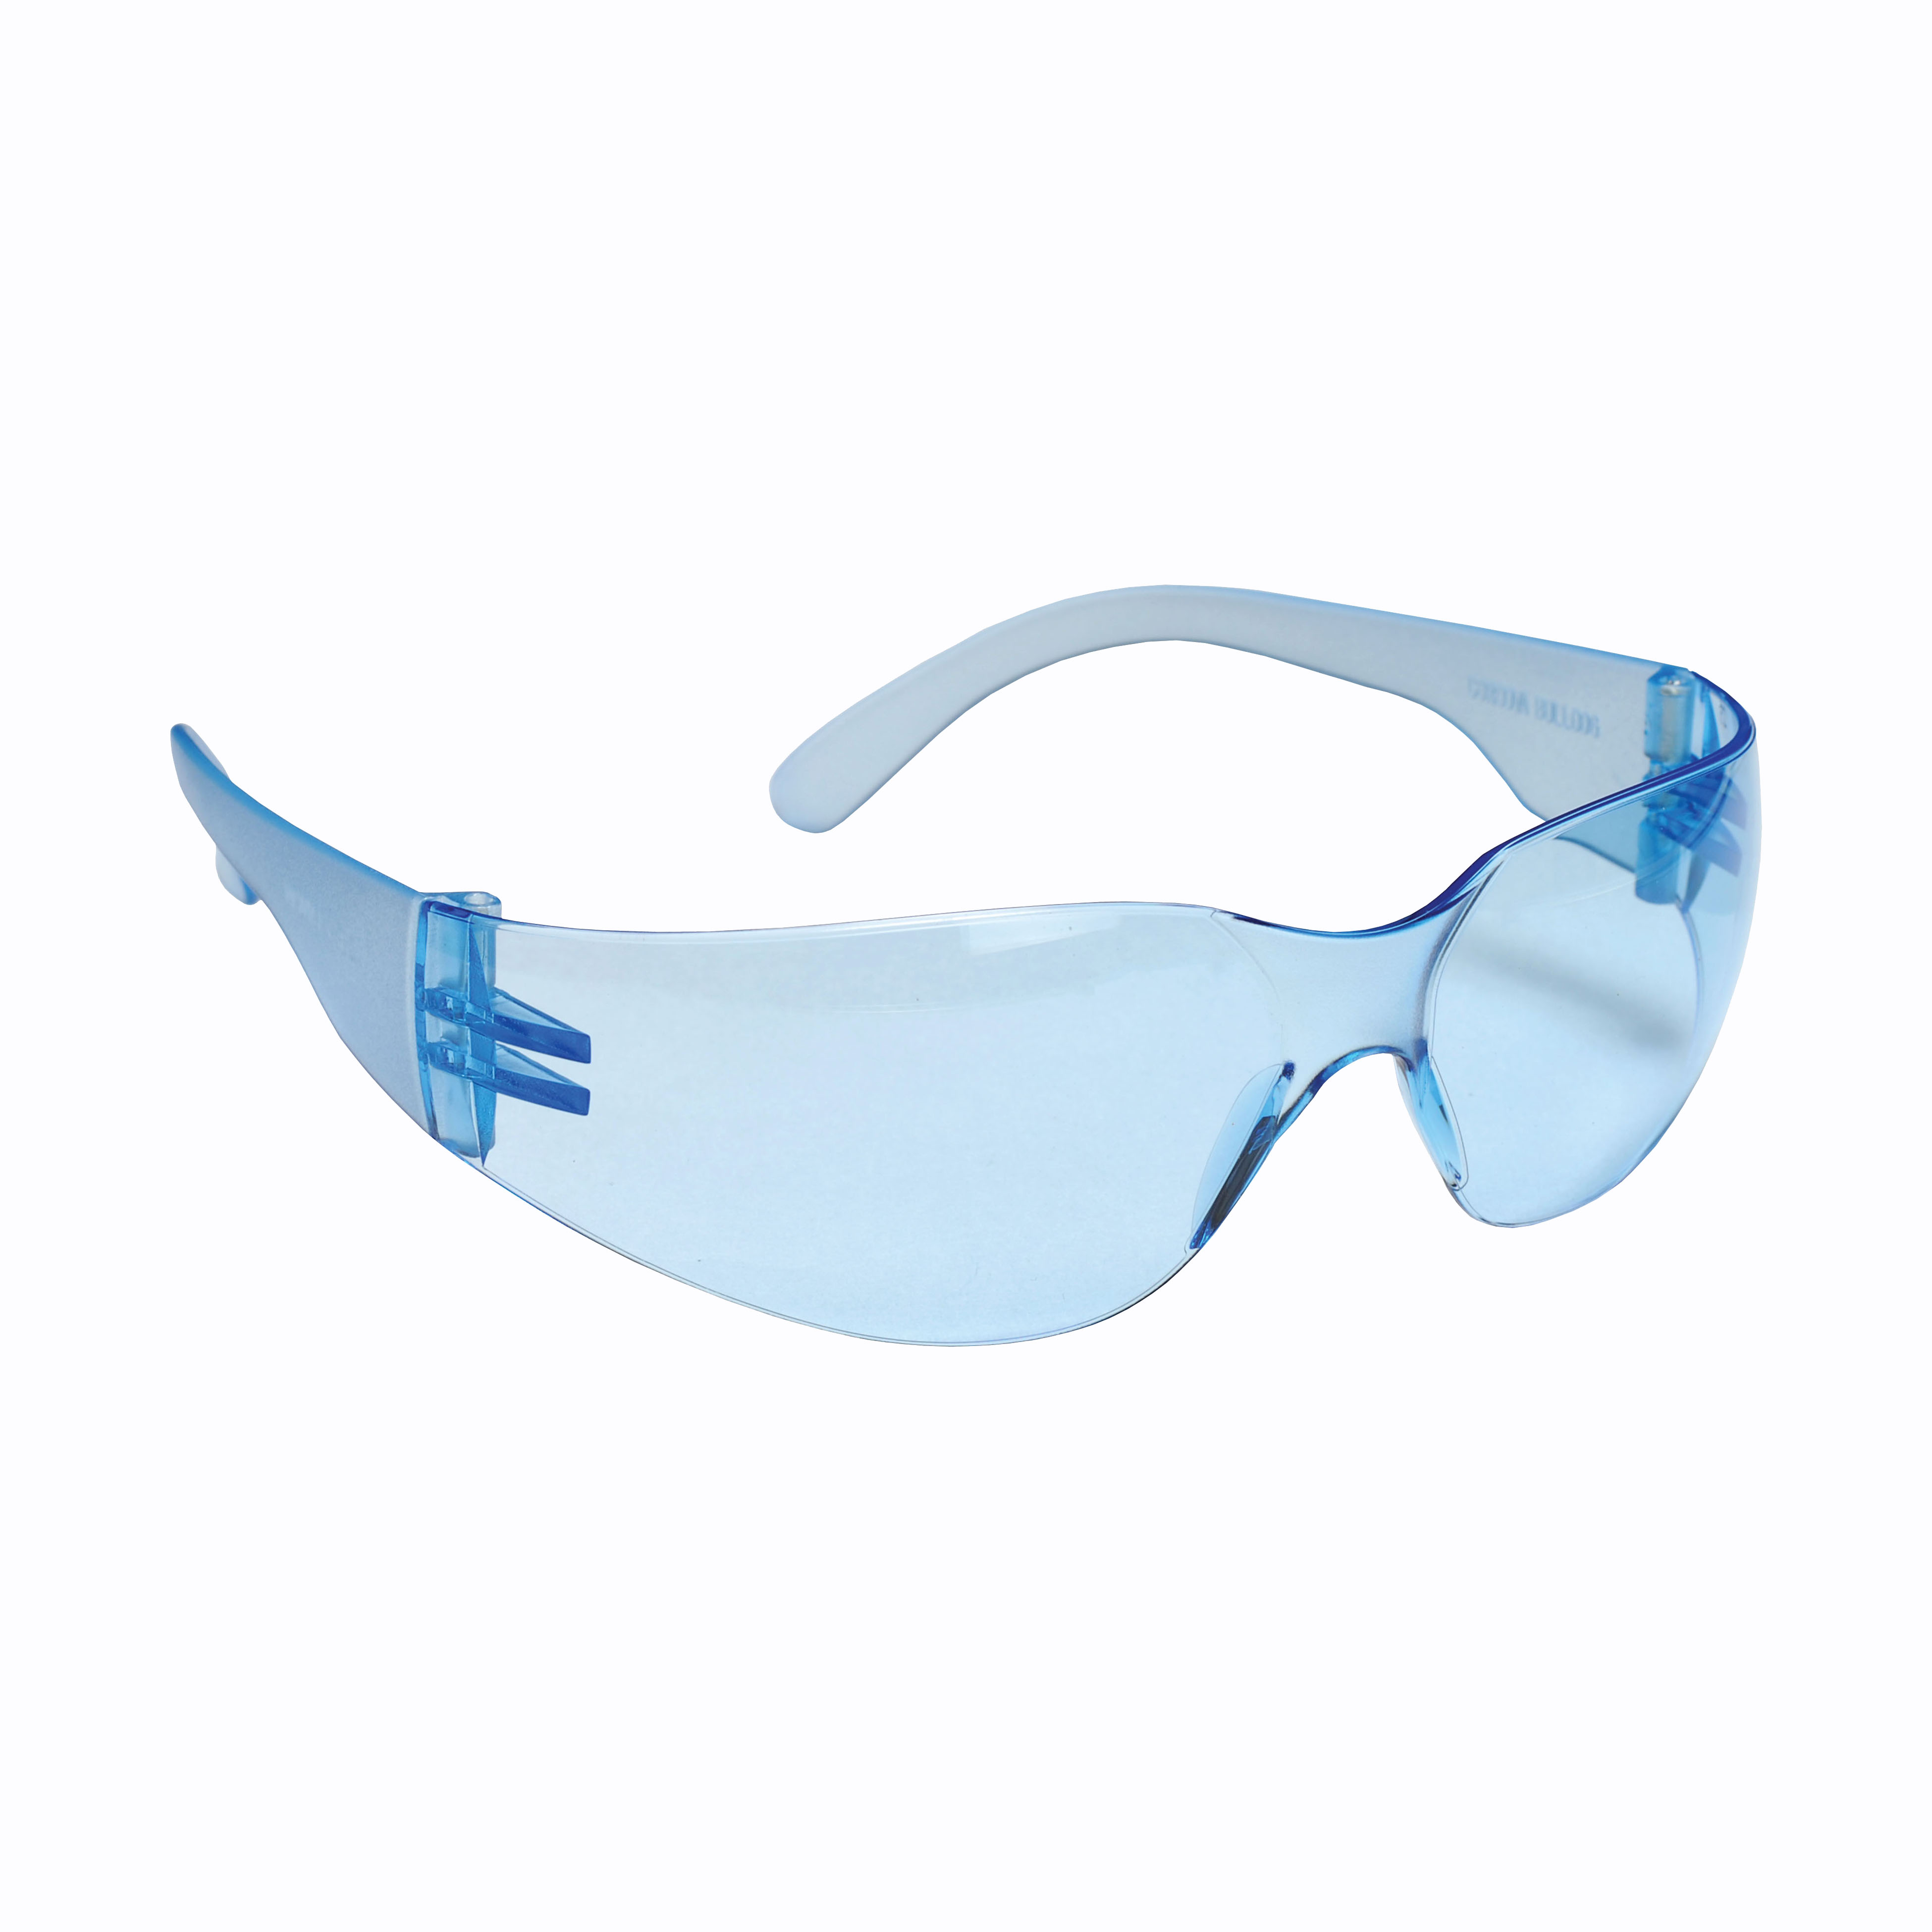 EHF15S Bulldog, Safety Glasses, Light Blue